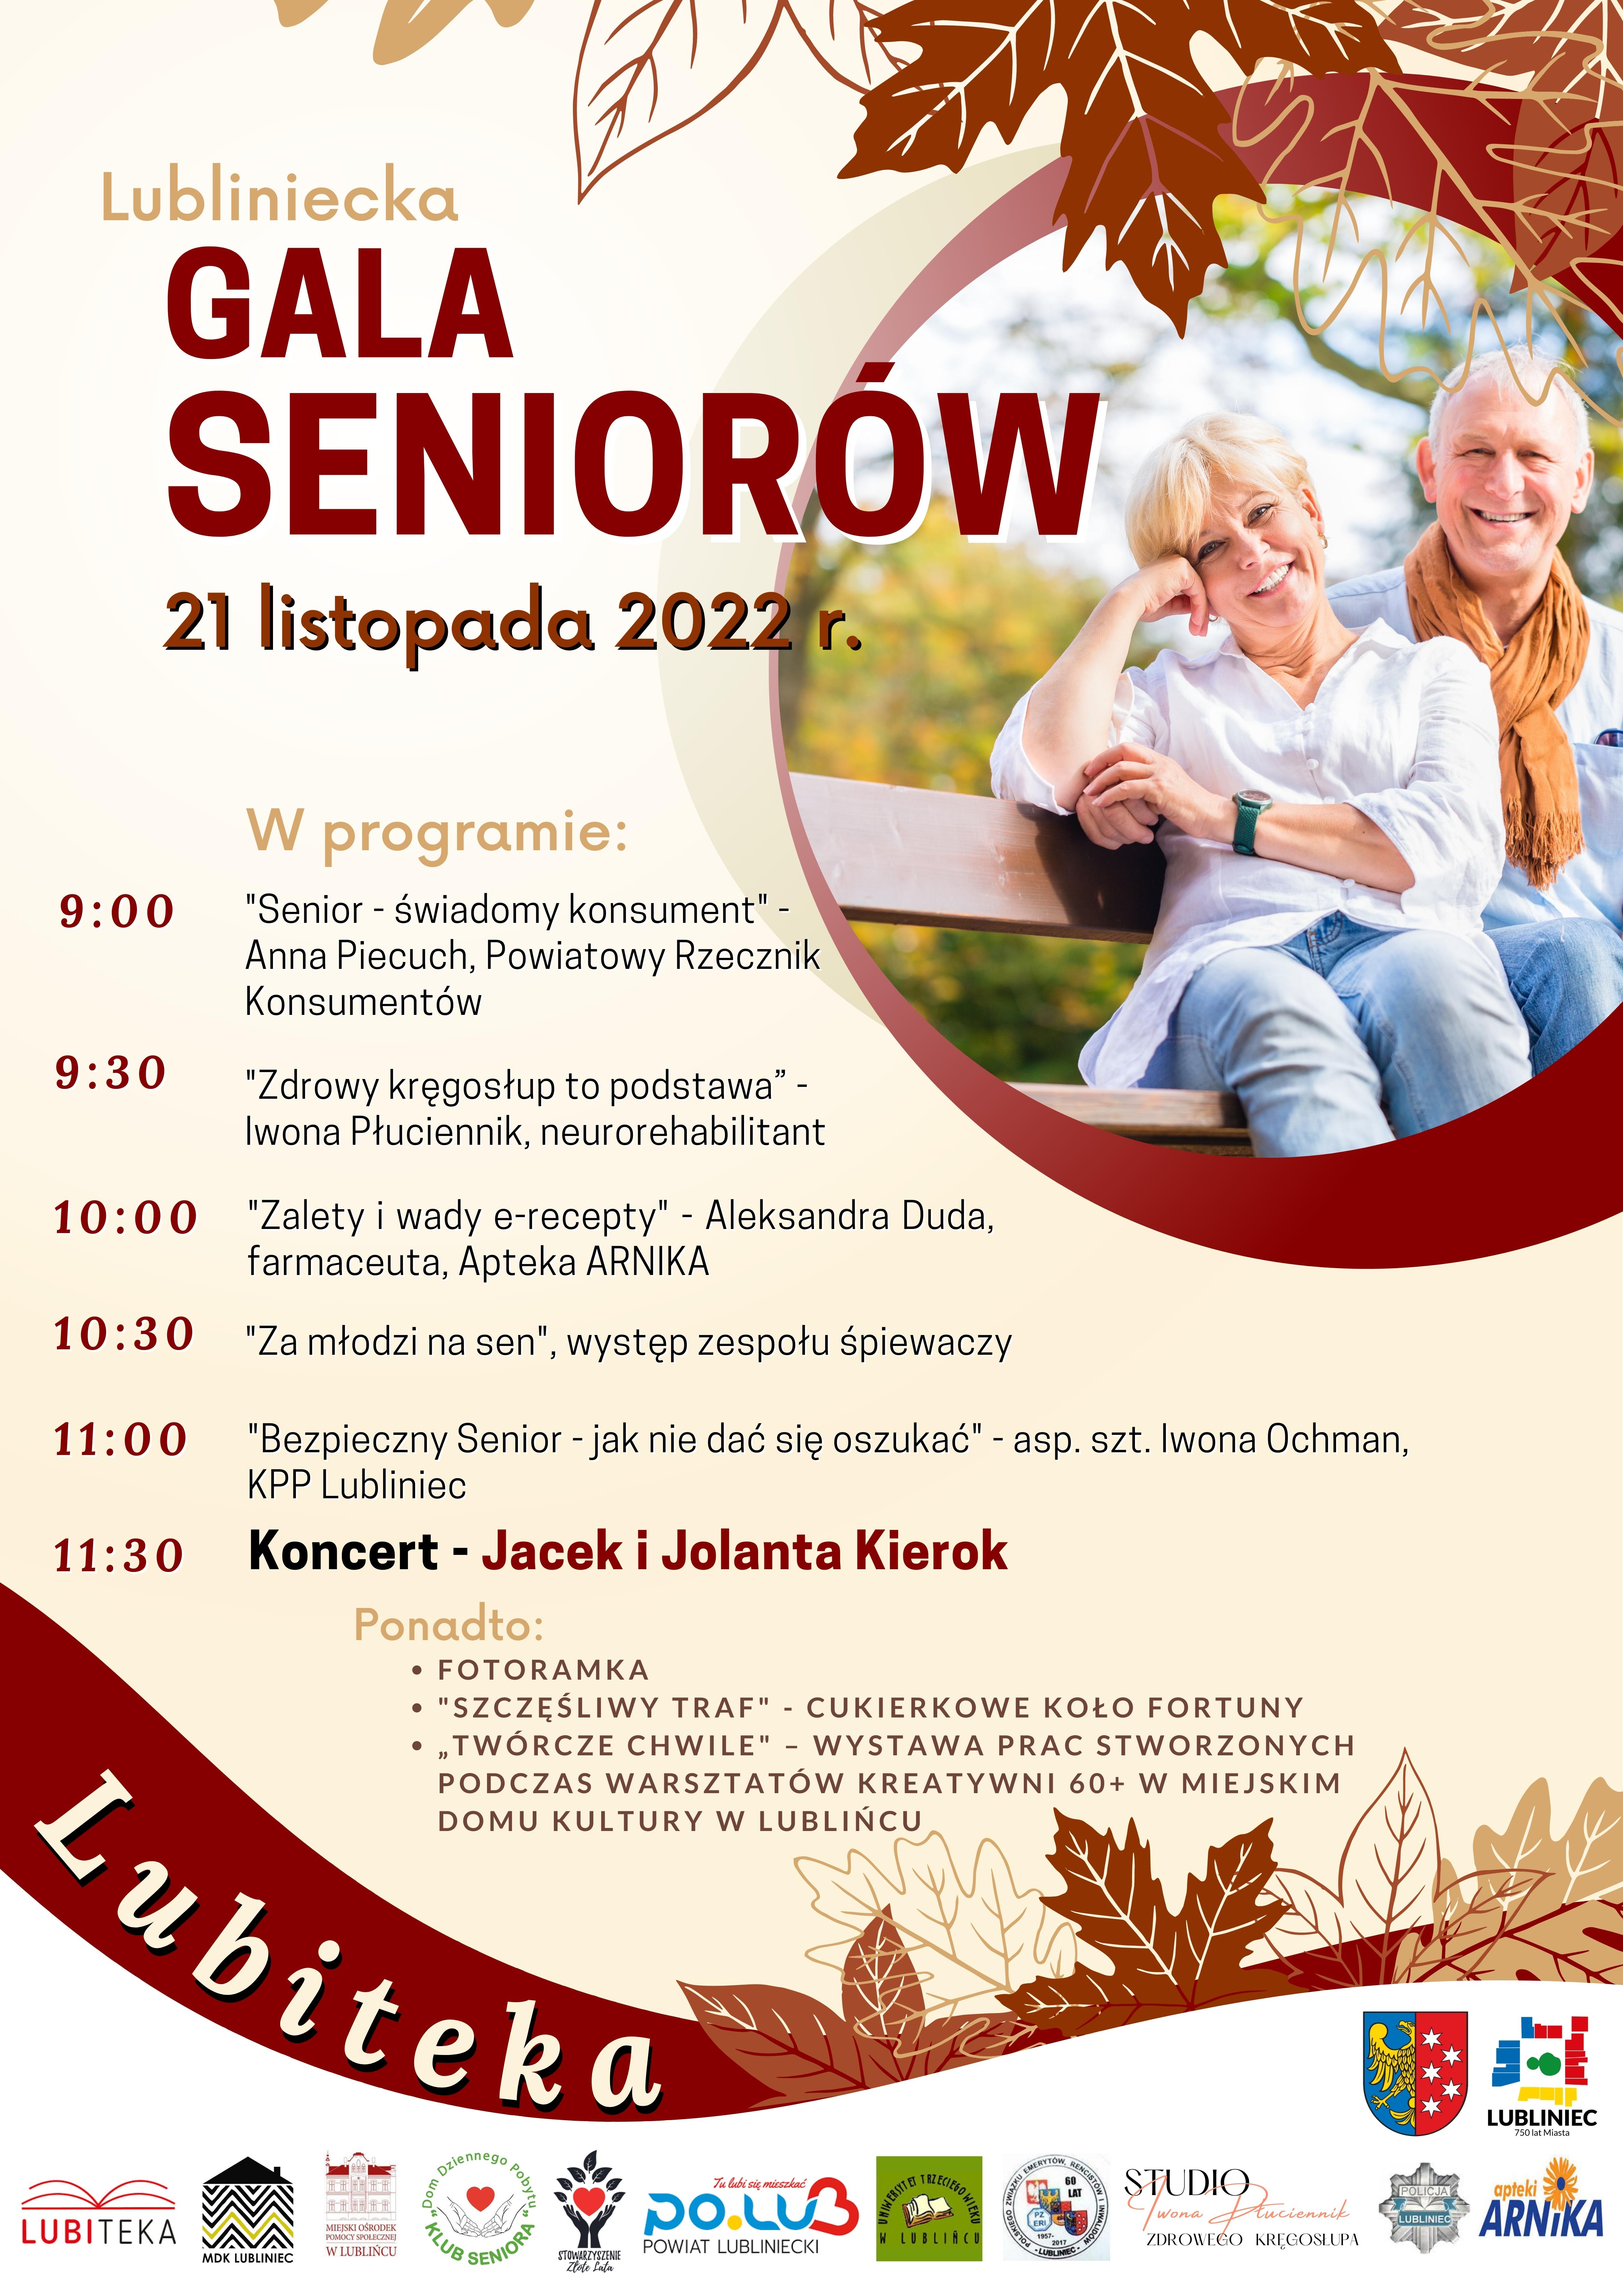 Plakat promujący wydarzenie - Lubliniecka Gala Seniorów. Program wydarzenia i dodatkowe atrakcje w treści posta.